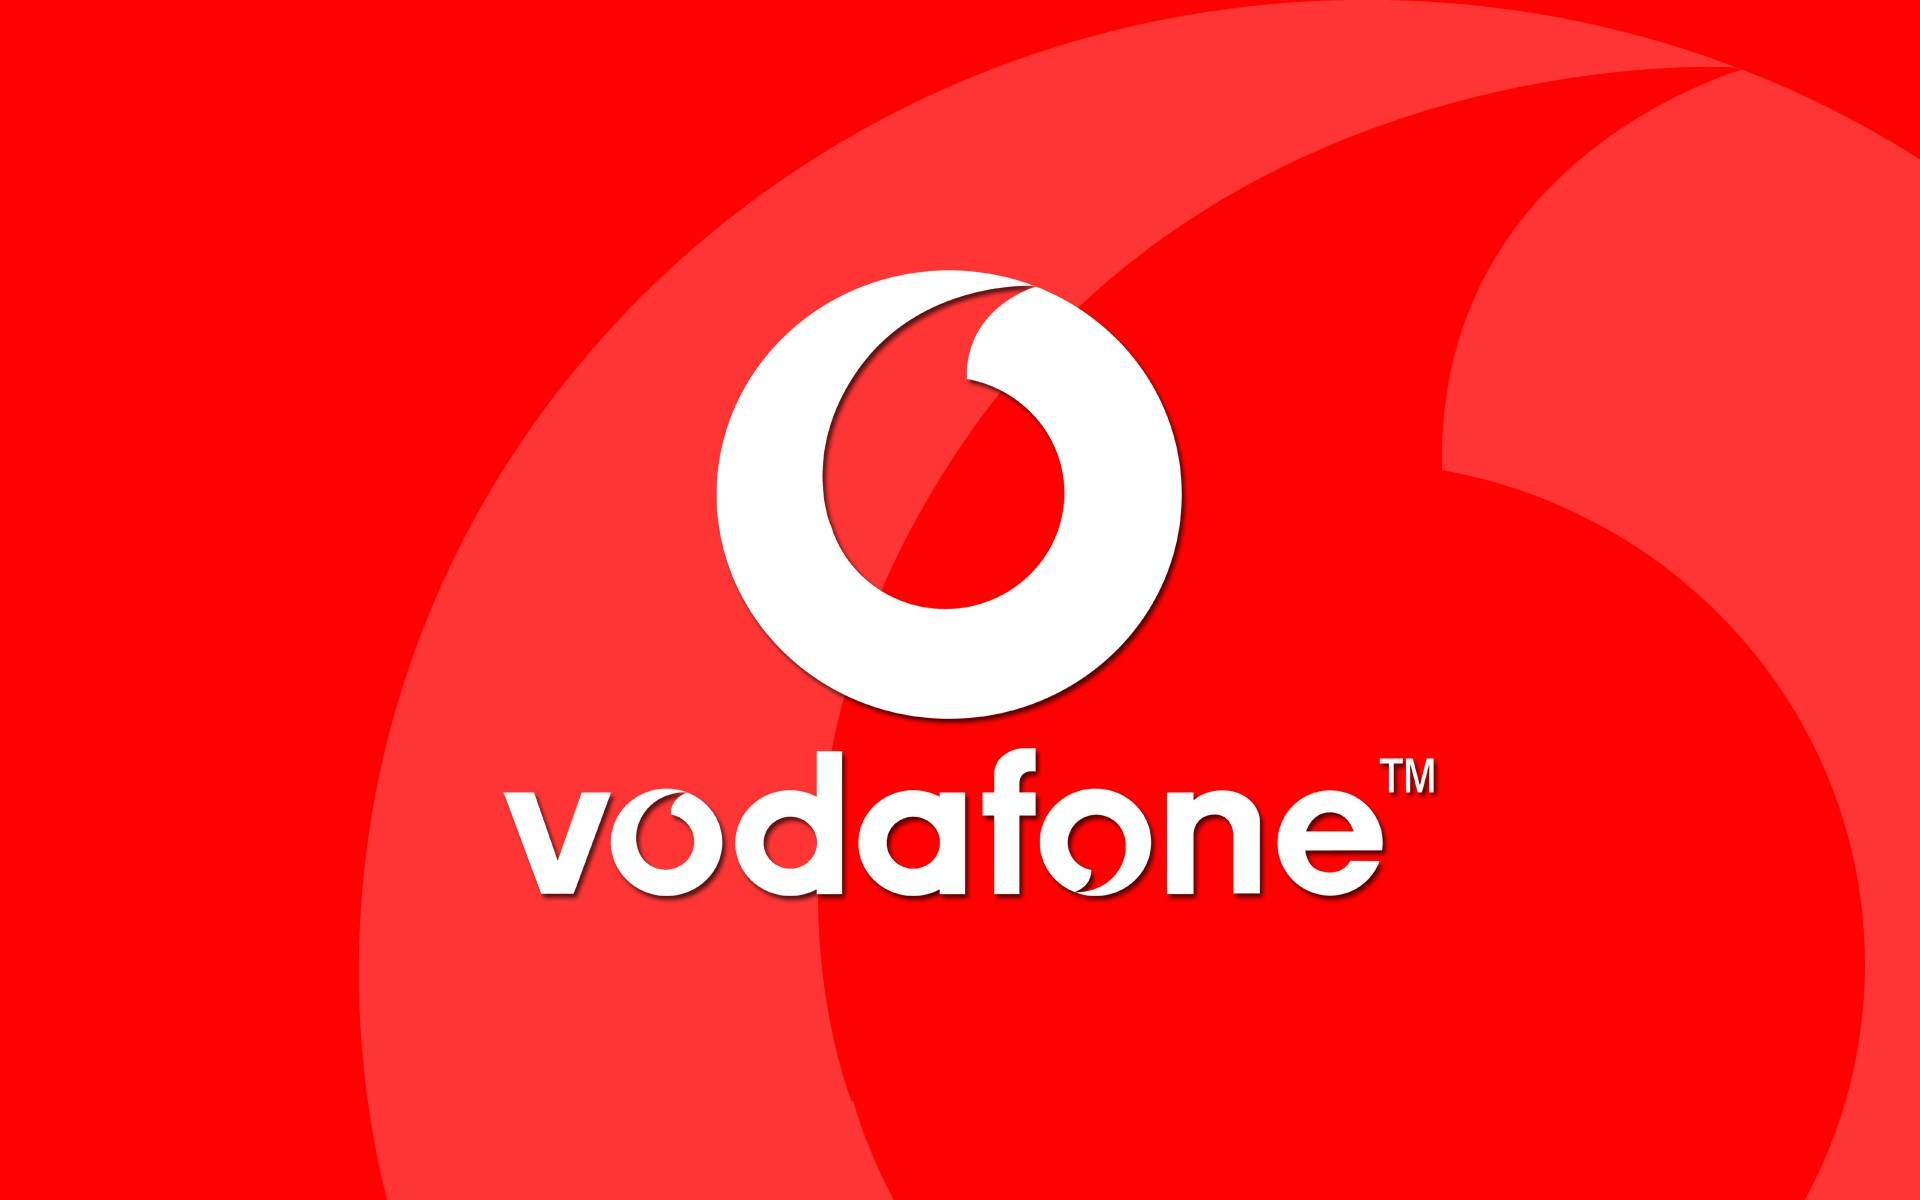 European Vodafone